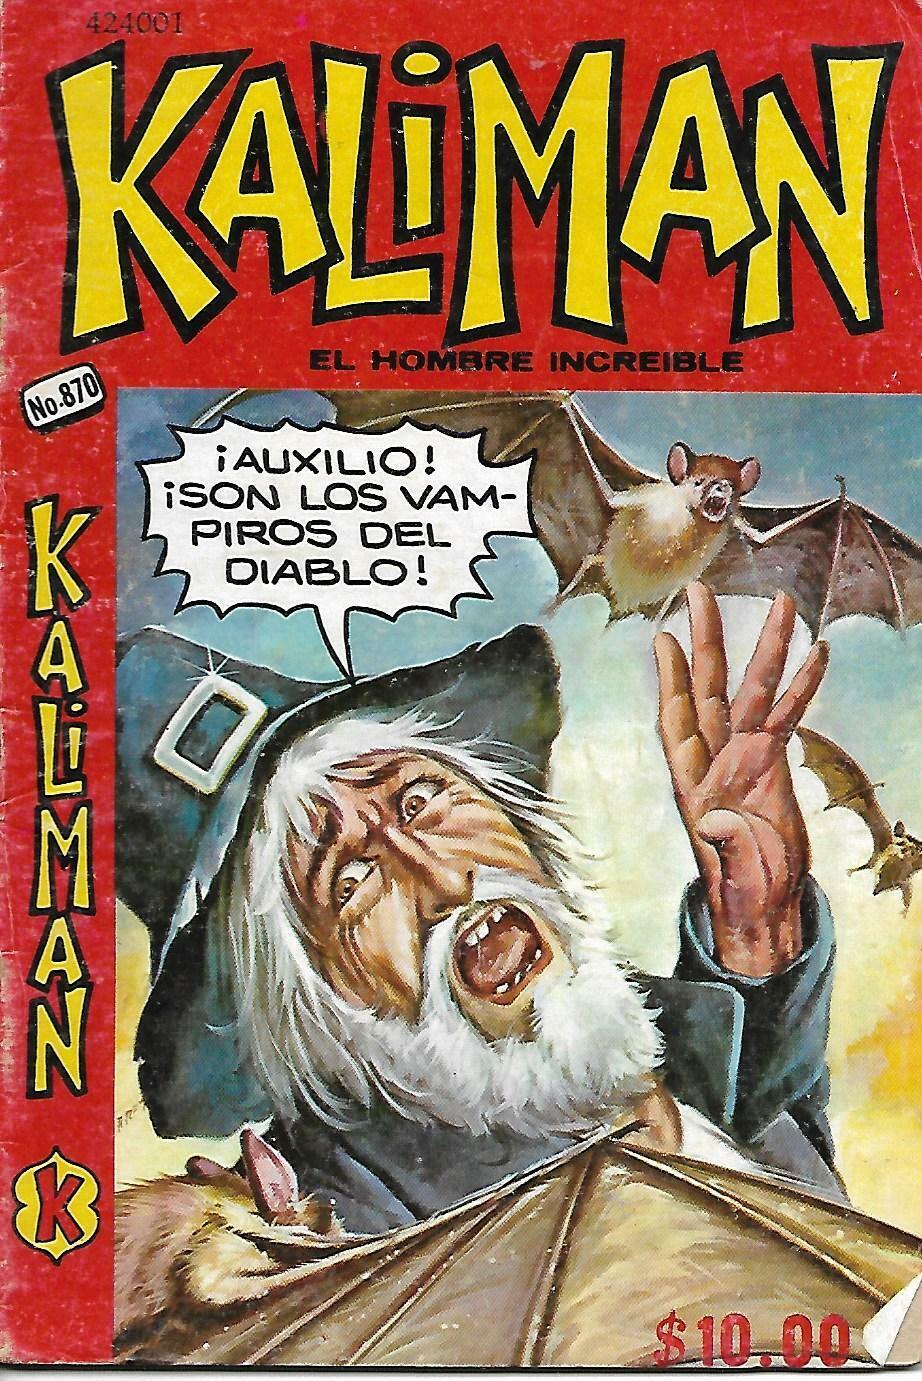 Kaliman El Hombre Increible #870 -Julio 30, 1982 - Mexico 